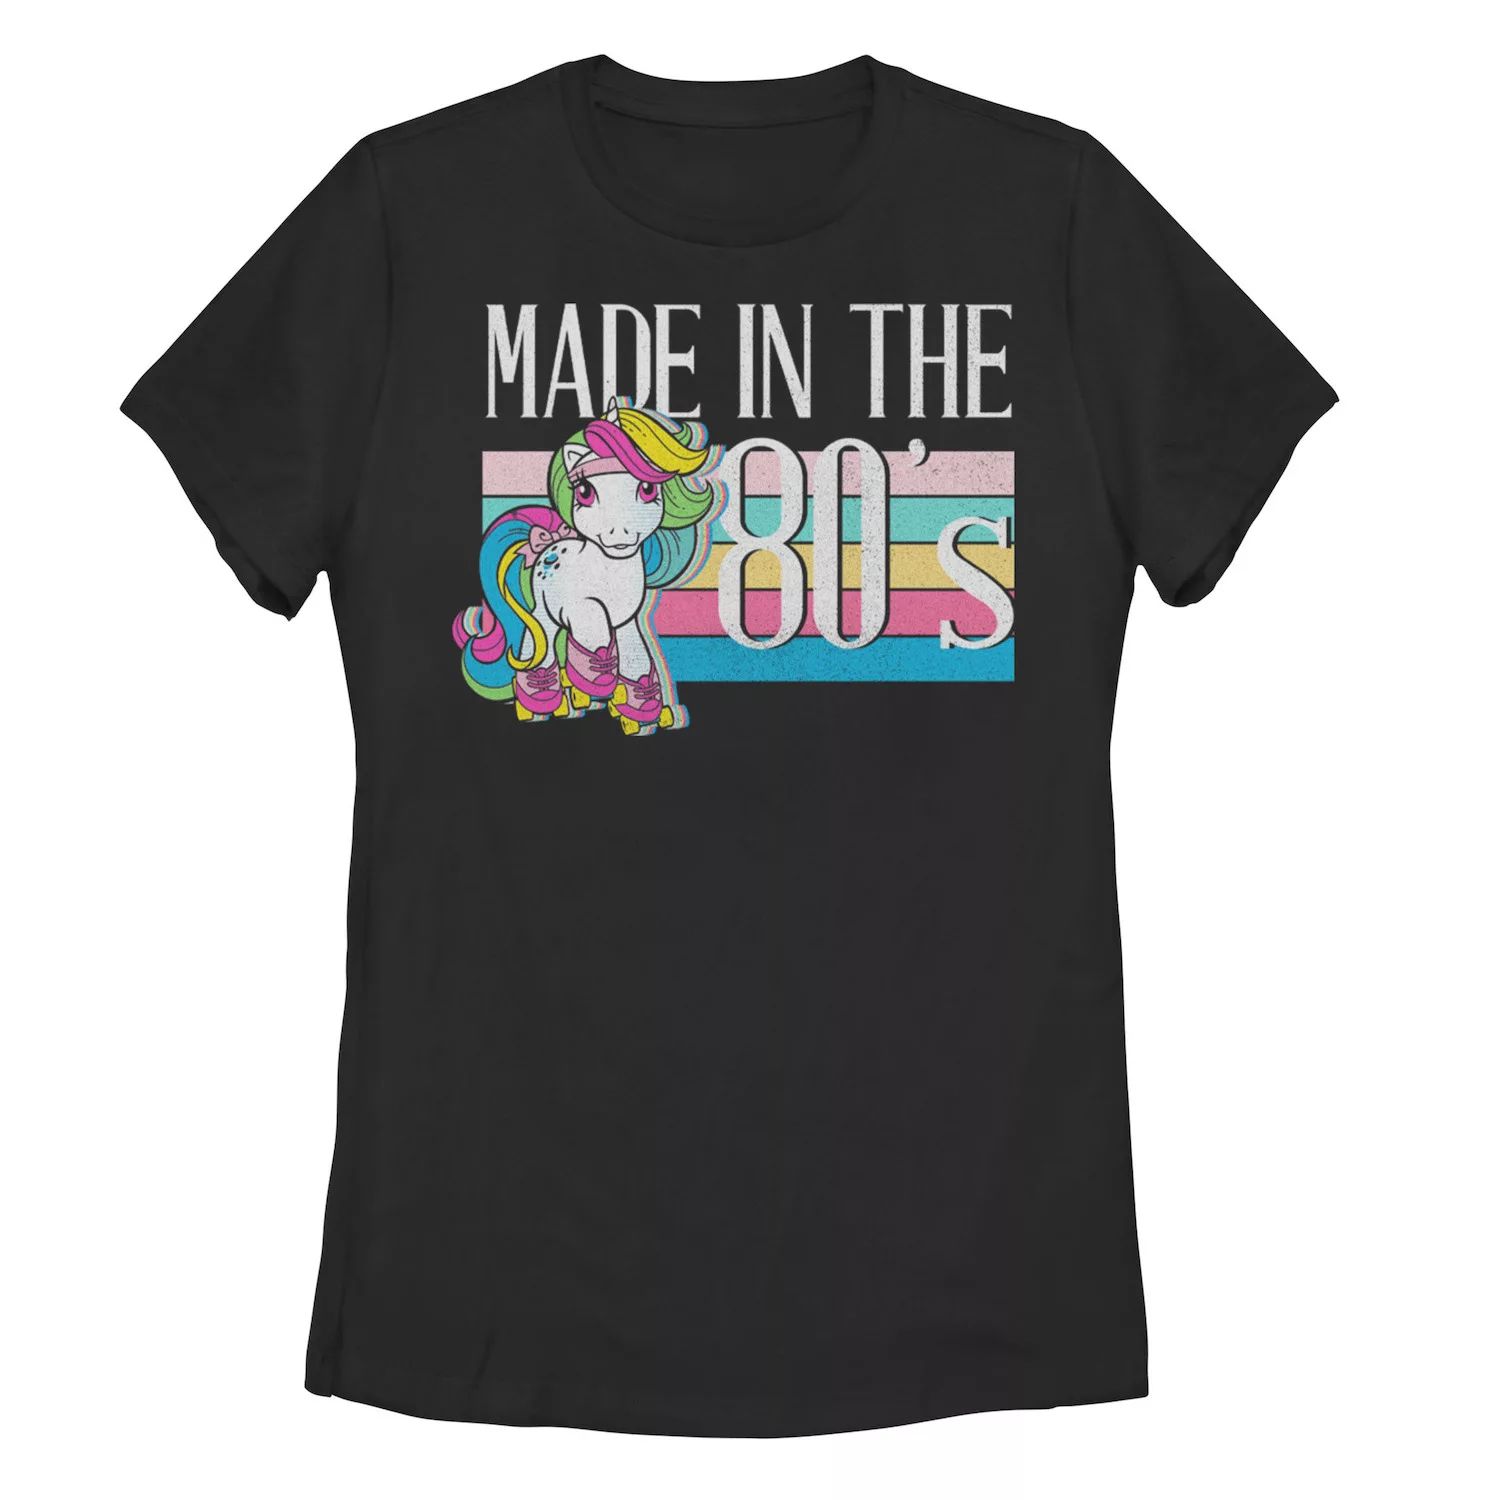 Детская футболка с рисунком My Little Pony Moonstone, сделанная в 80-х годах My Little Pony термокружка my little pony новое поколение розовая 330 мл фарфор